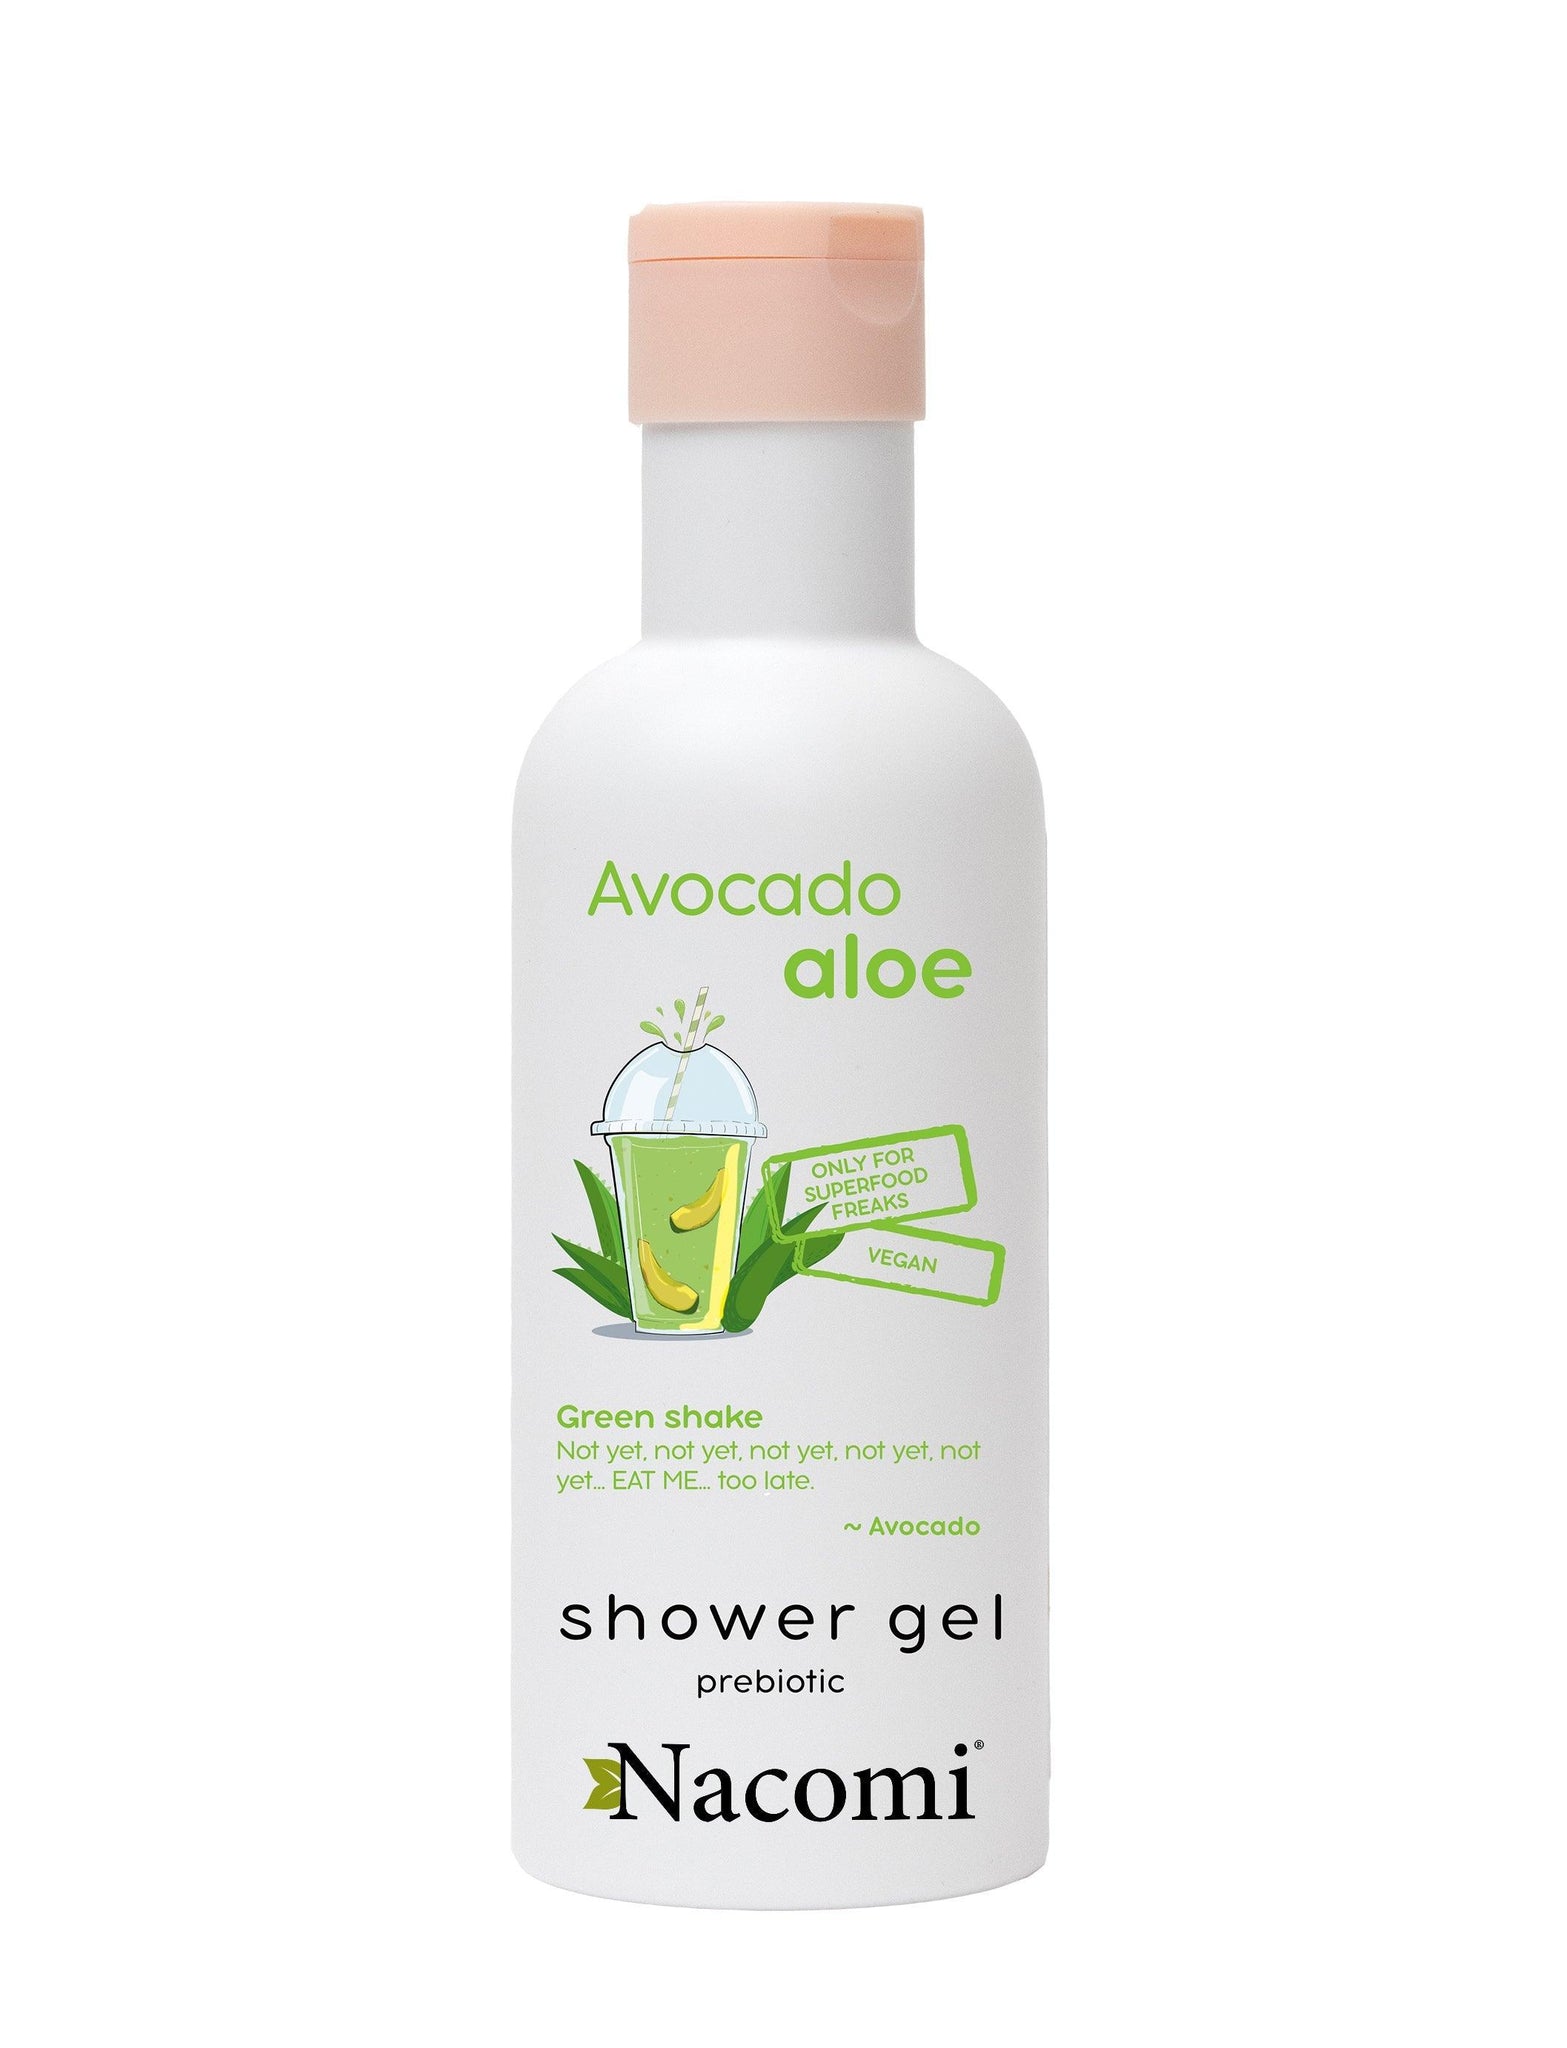 Nacomi Aavocado And Aloe Shower Gel 300 ml - Mrayti Store